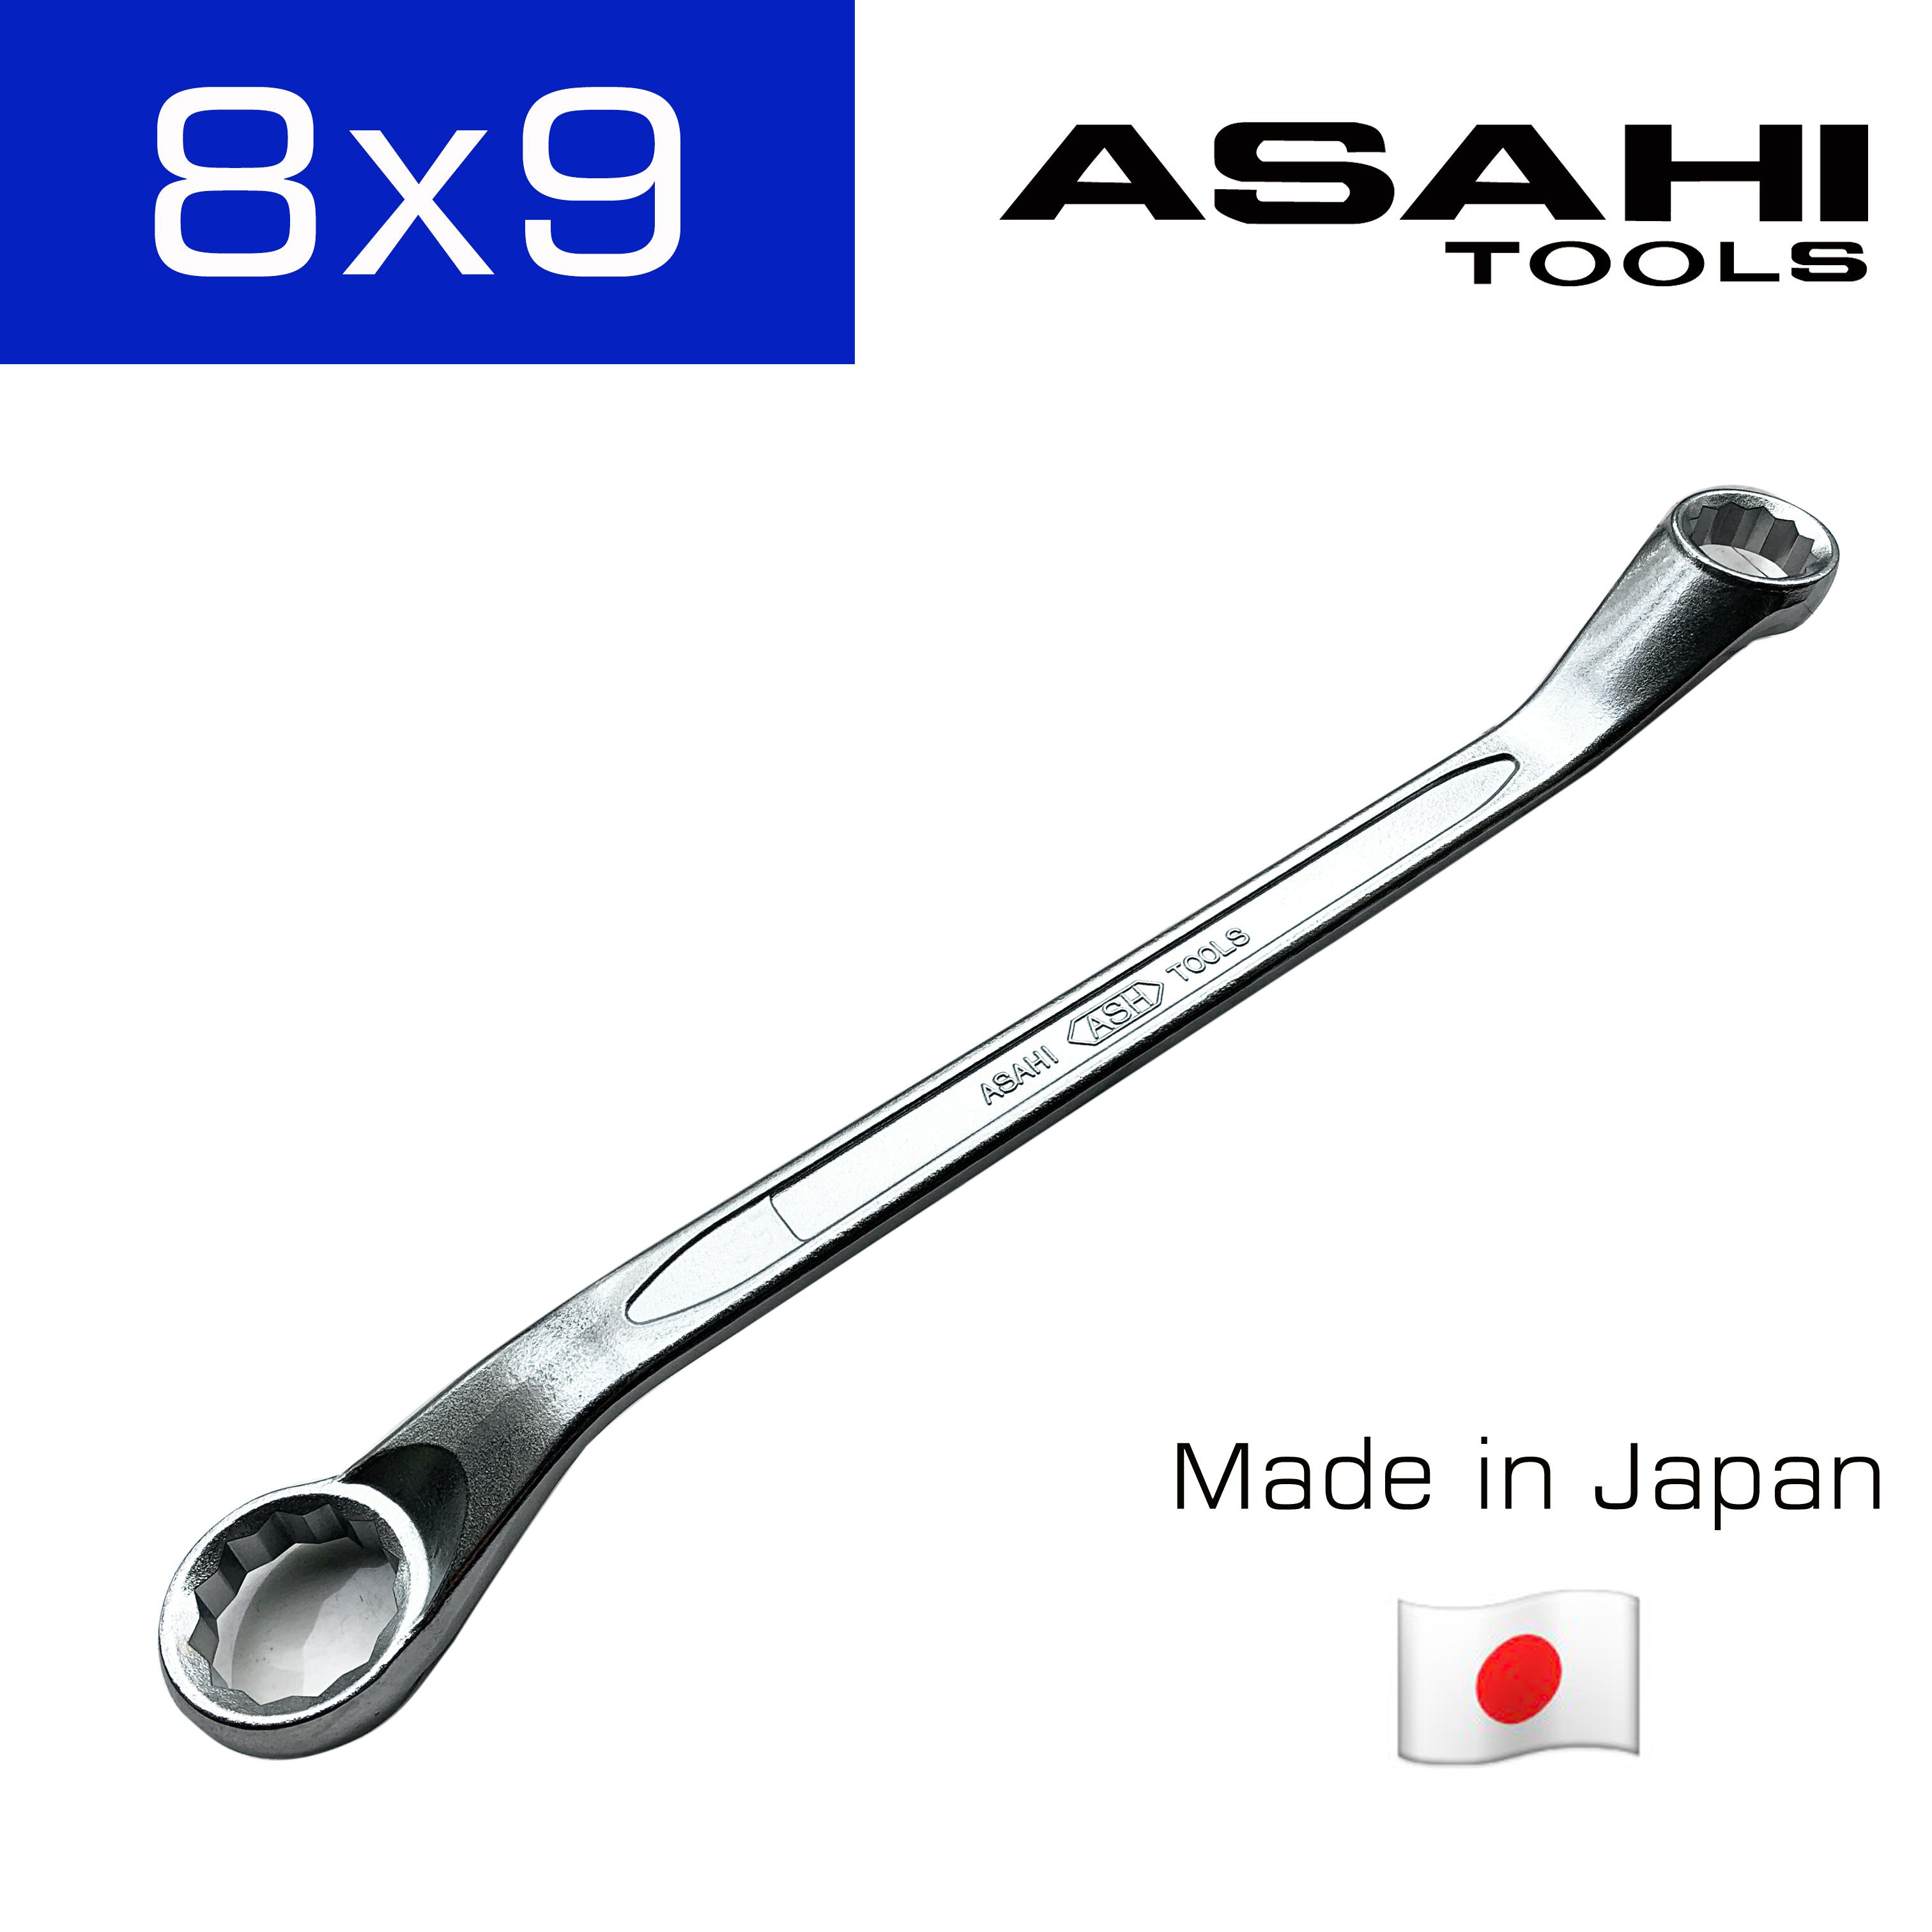 Asahi  ประแจแหวน 45 องศา Made in Japan  มาตรฐาน JIS  (16 ขนาด (มิล) : กดเลือกขนาดตอนสั่งซื้อ)